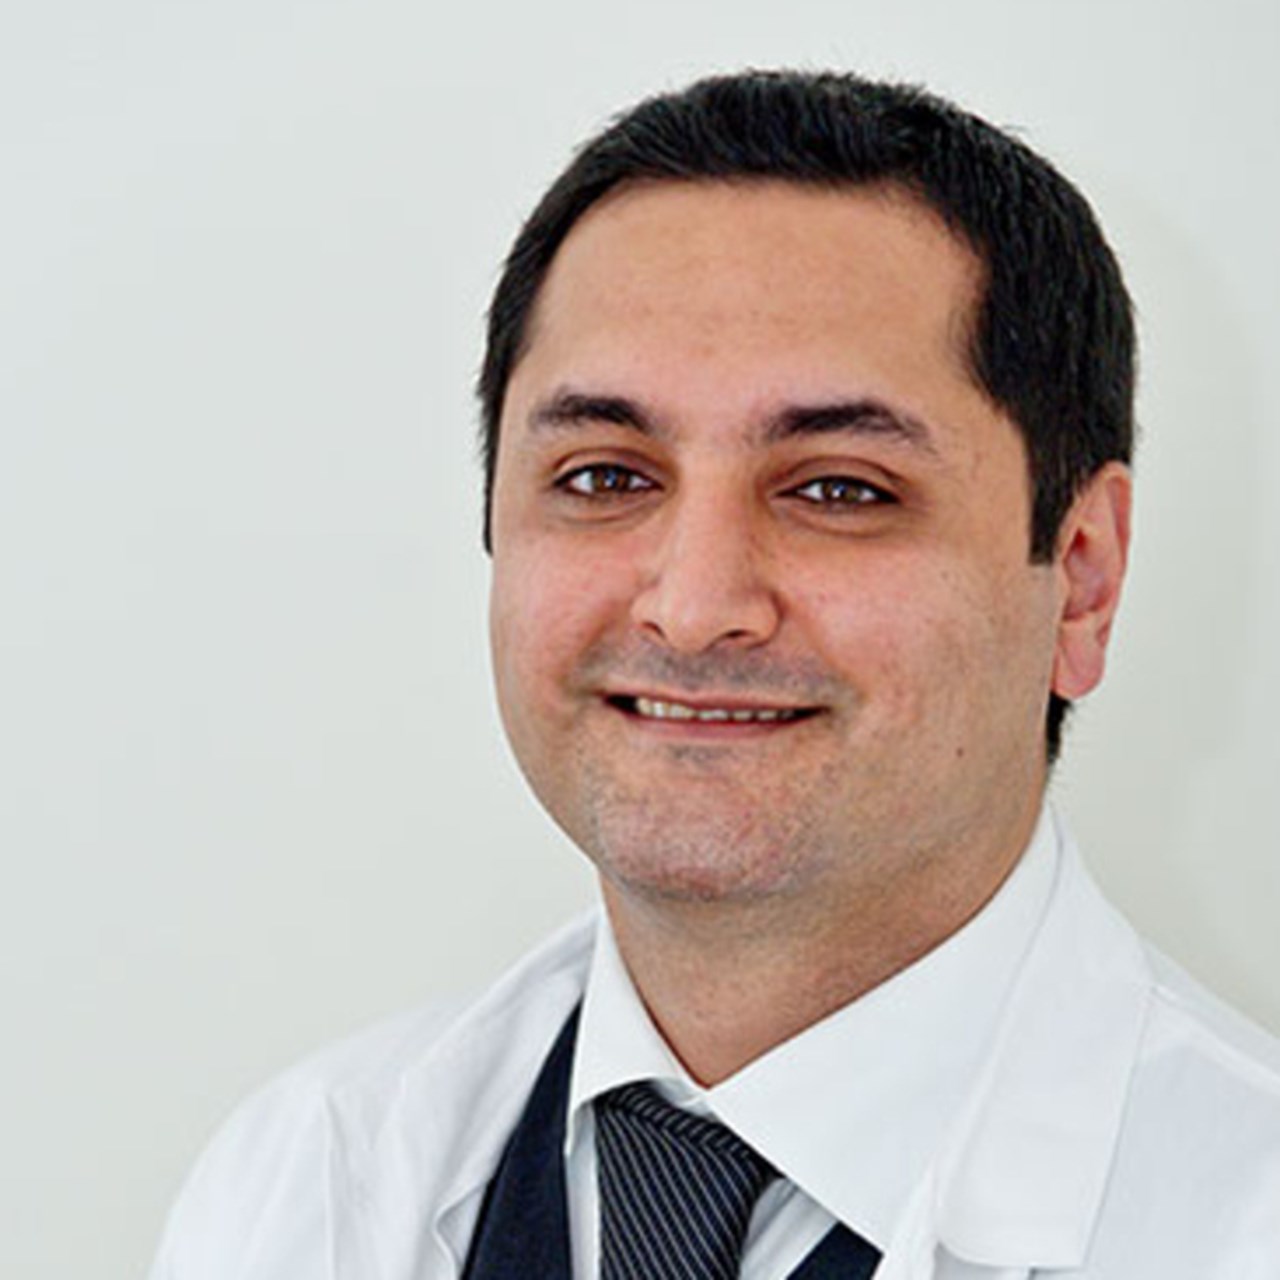 Porträtt på Alexander Shayesteh, överläkare och lektor vid folkhälsa och klinism medicin vid umeå universitet